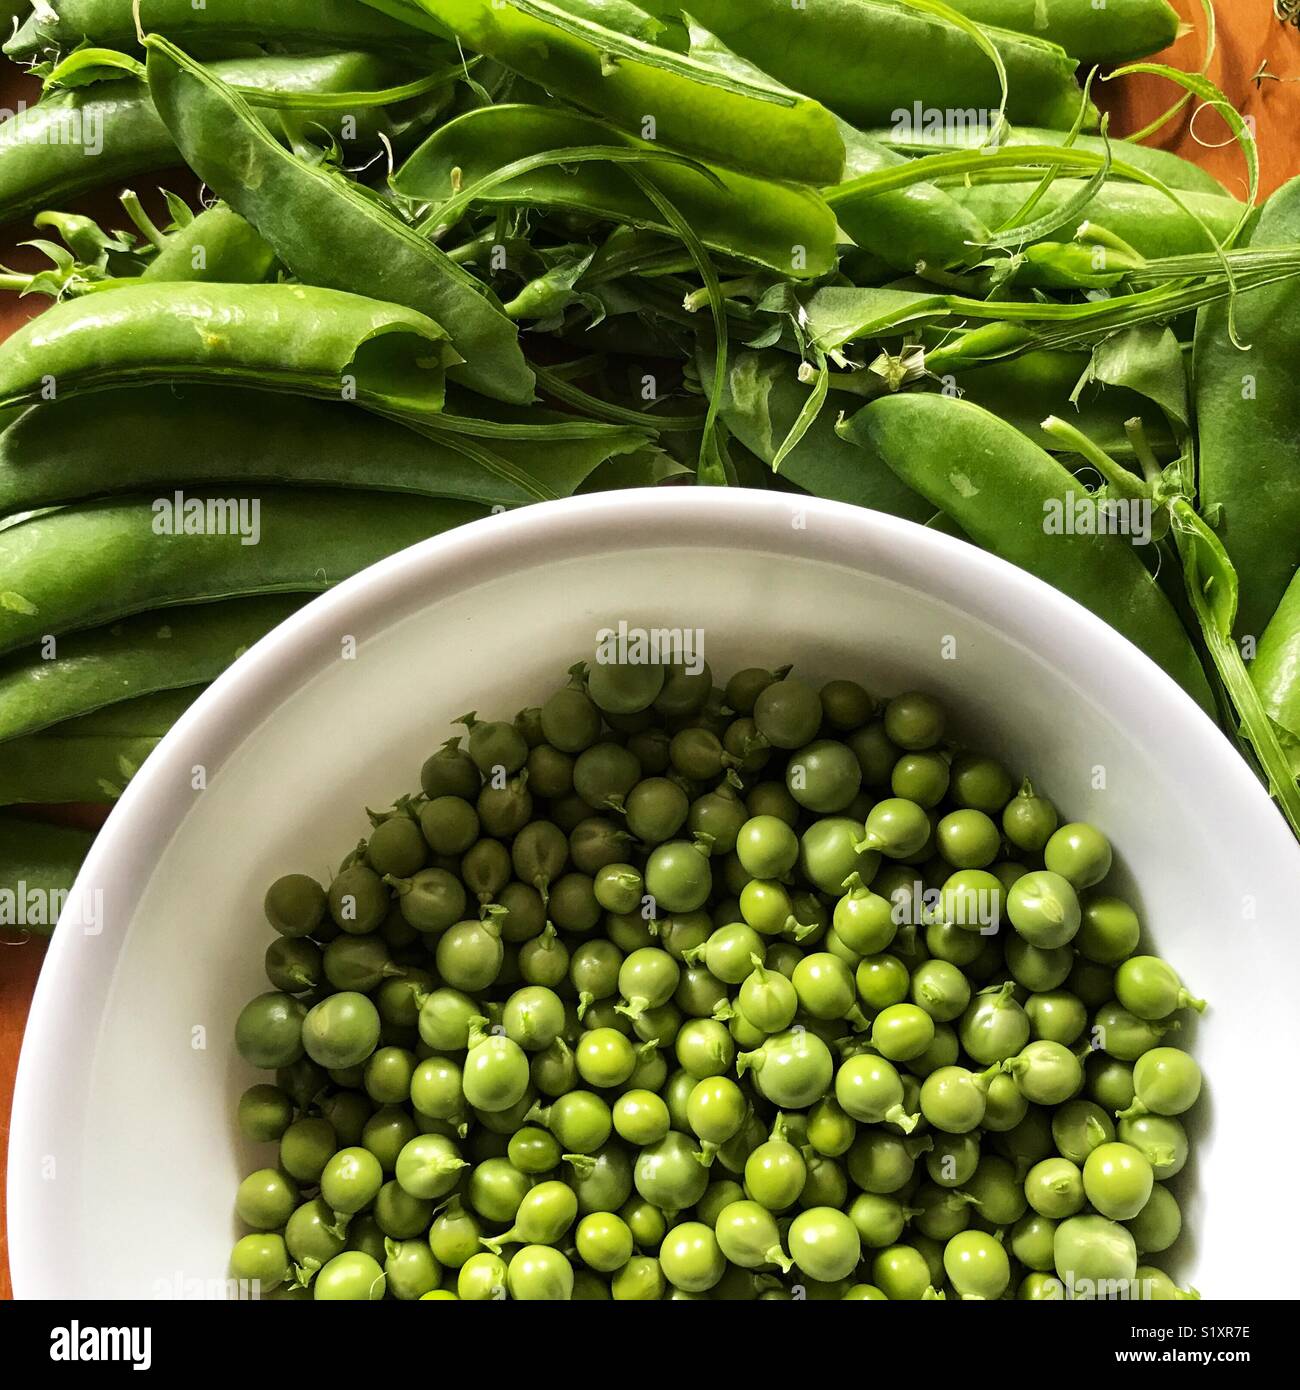 Fresh garden peas in a bowl Stock Photo